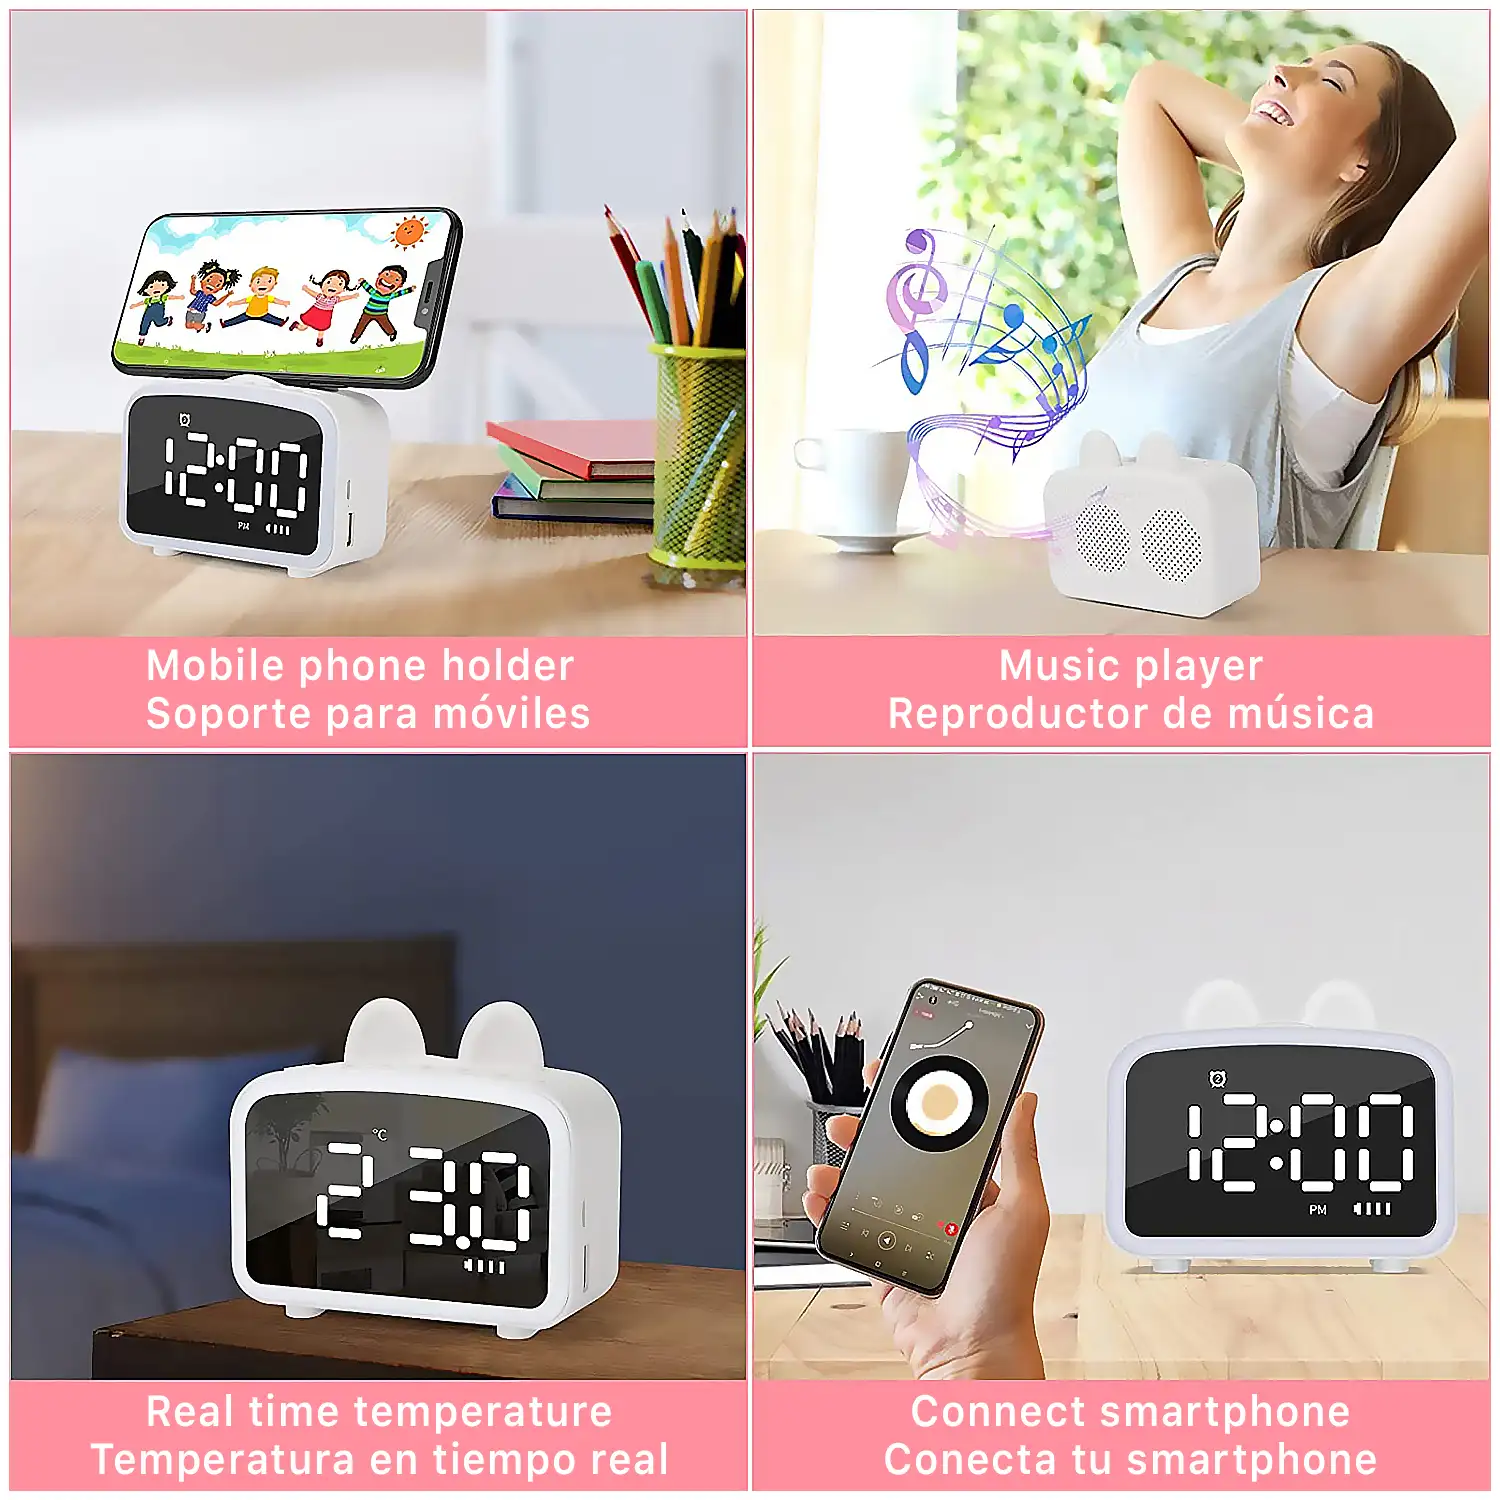 Reloj despertador LCD con luz nocturna, altavoz Bluetooth incorporado, termómetro, radio, soporte de smartphone. Batería recargable.